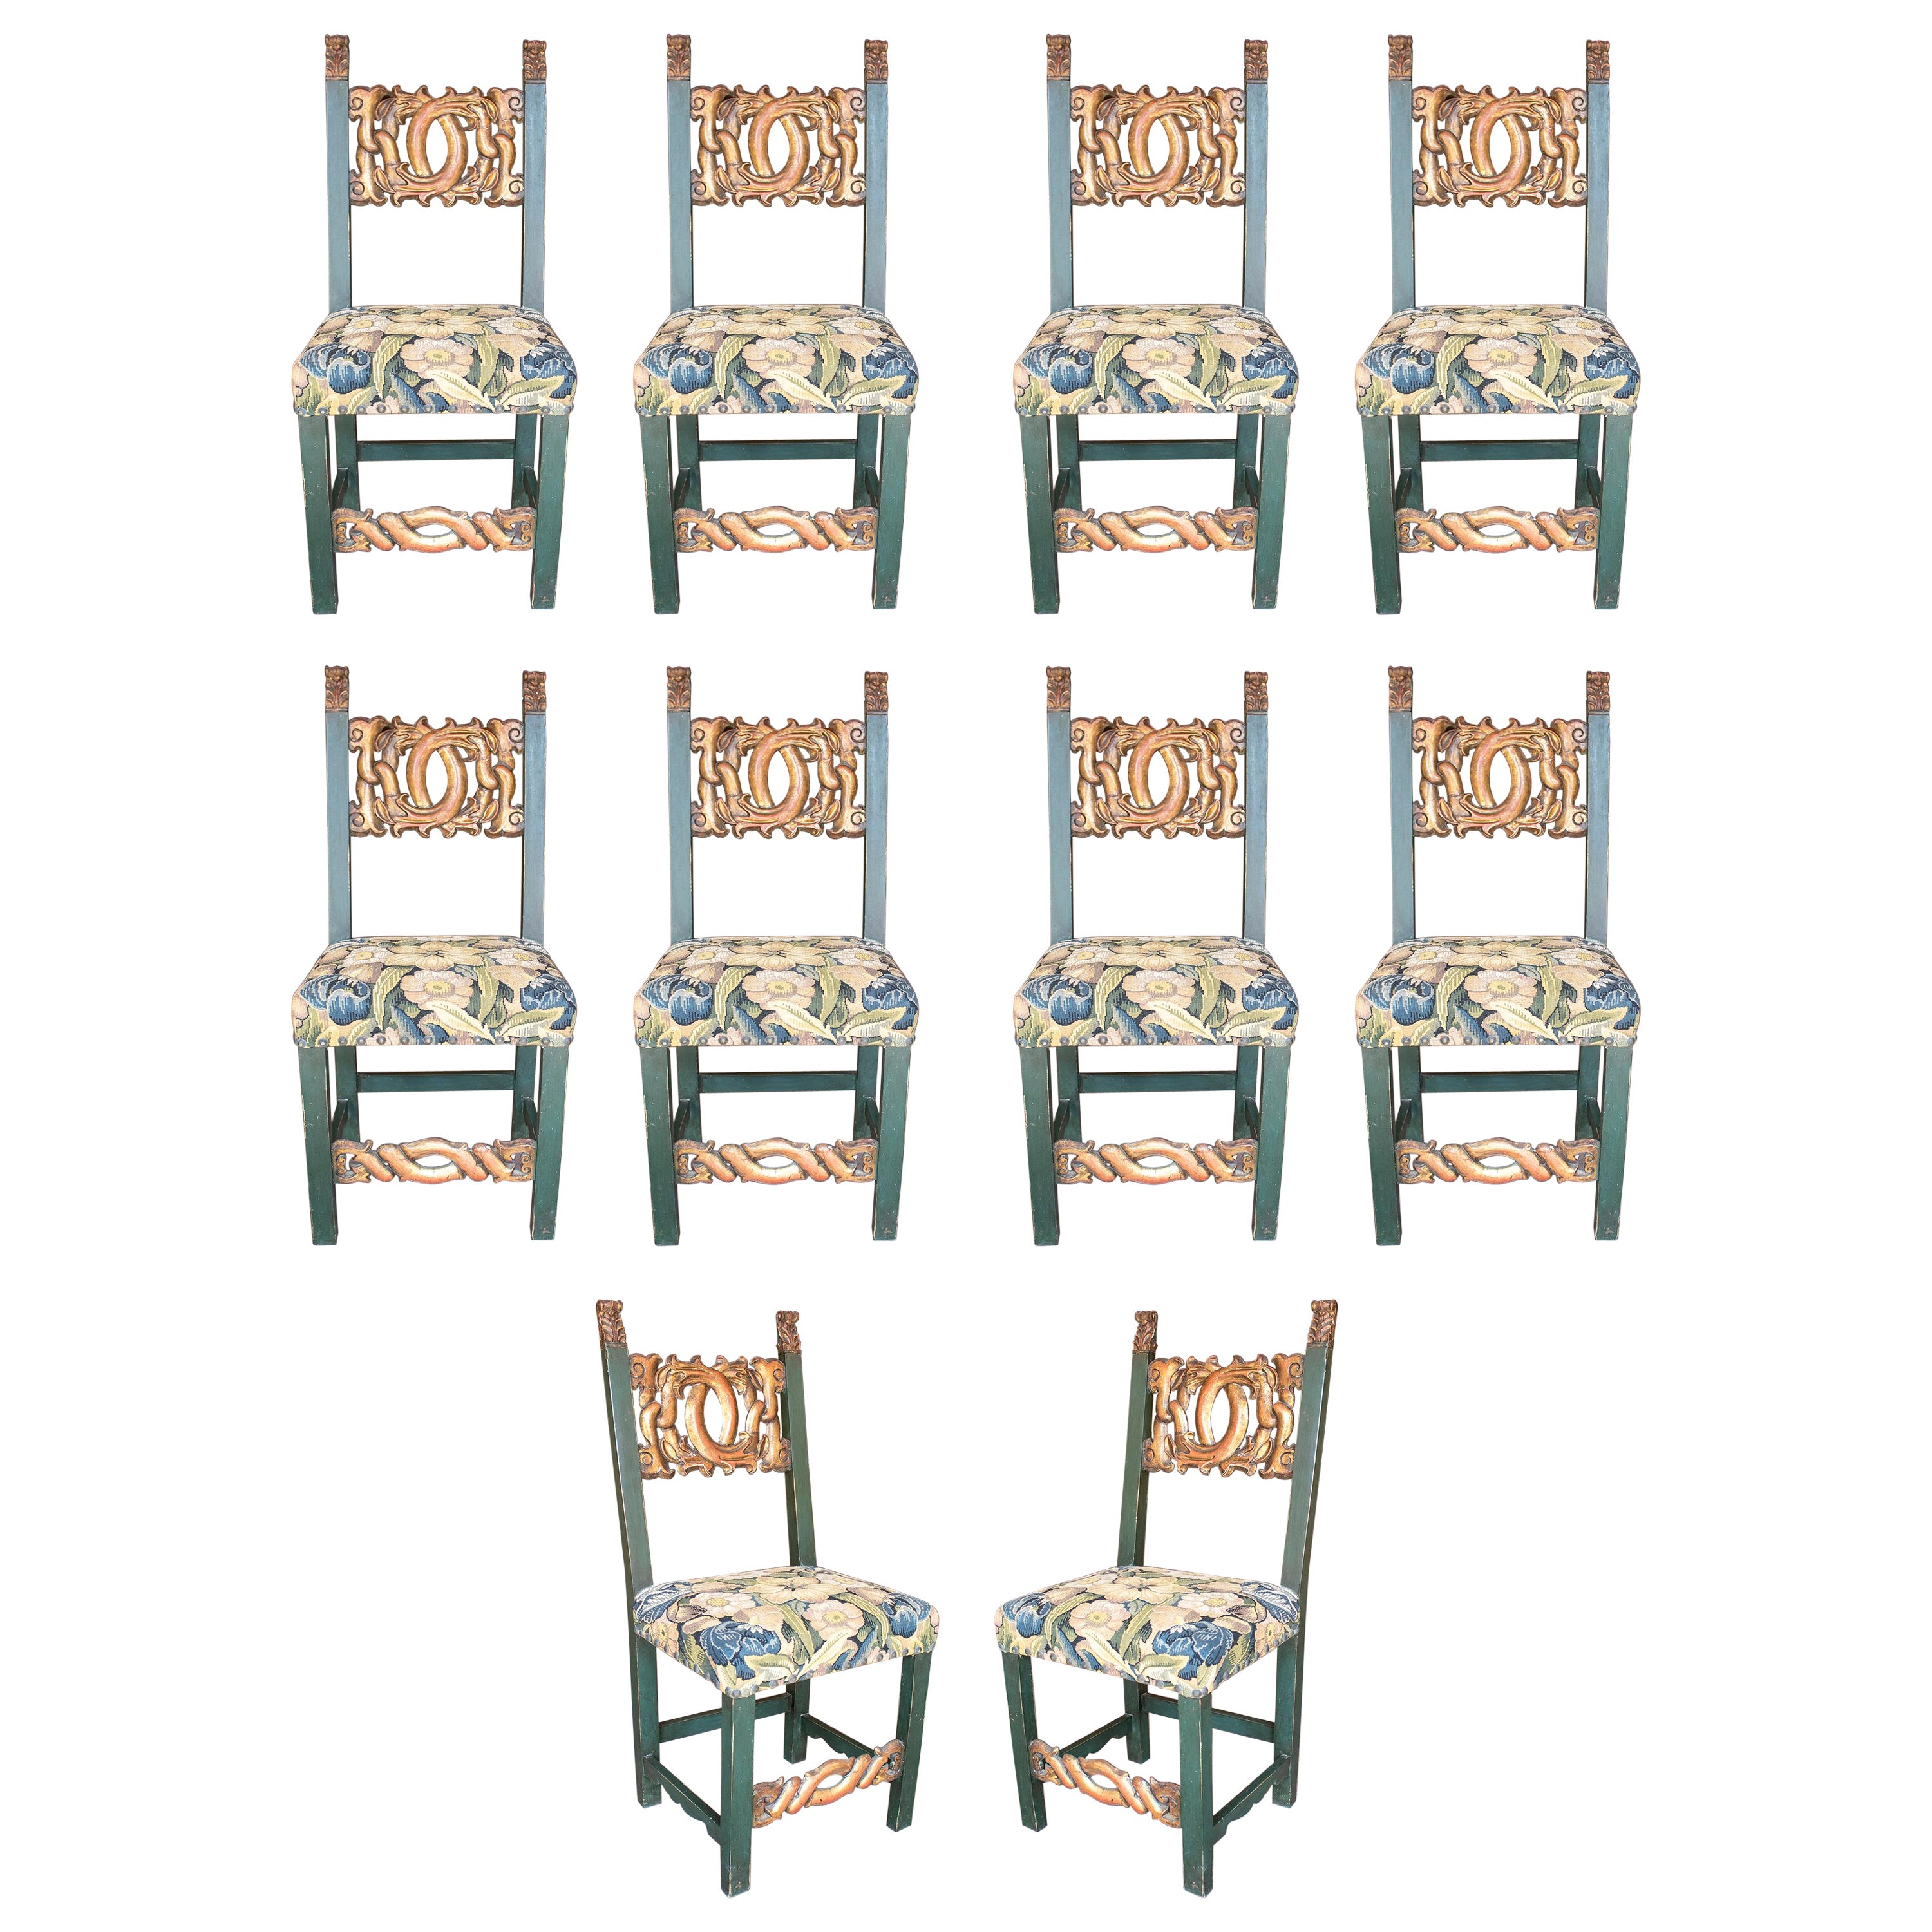 Ensemble de dix chaises espagnoles des années 1950 en bois sculpté à la main avec sièges en broderie